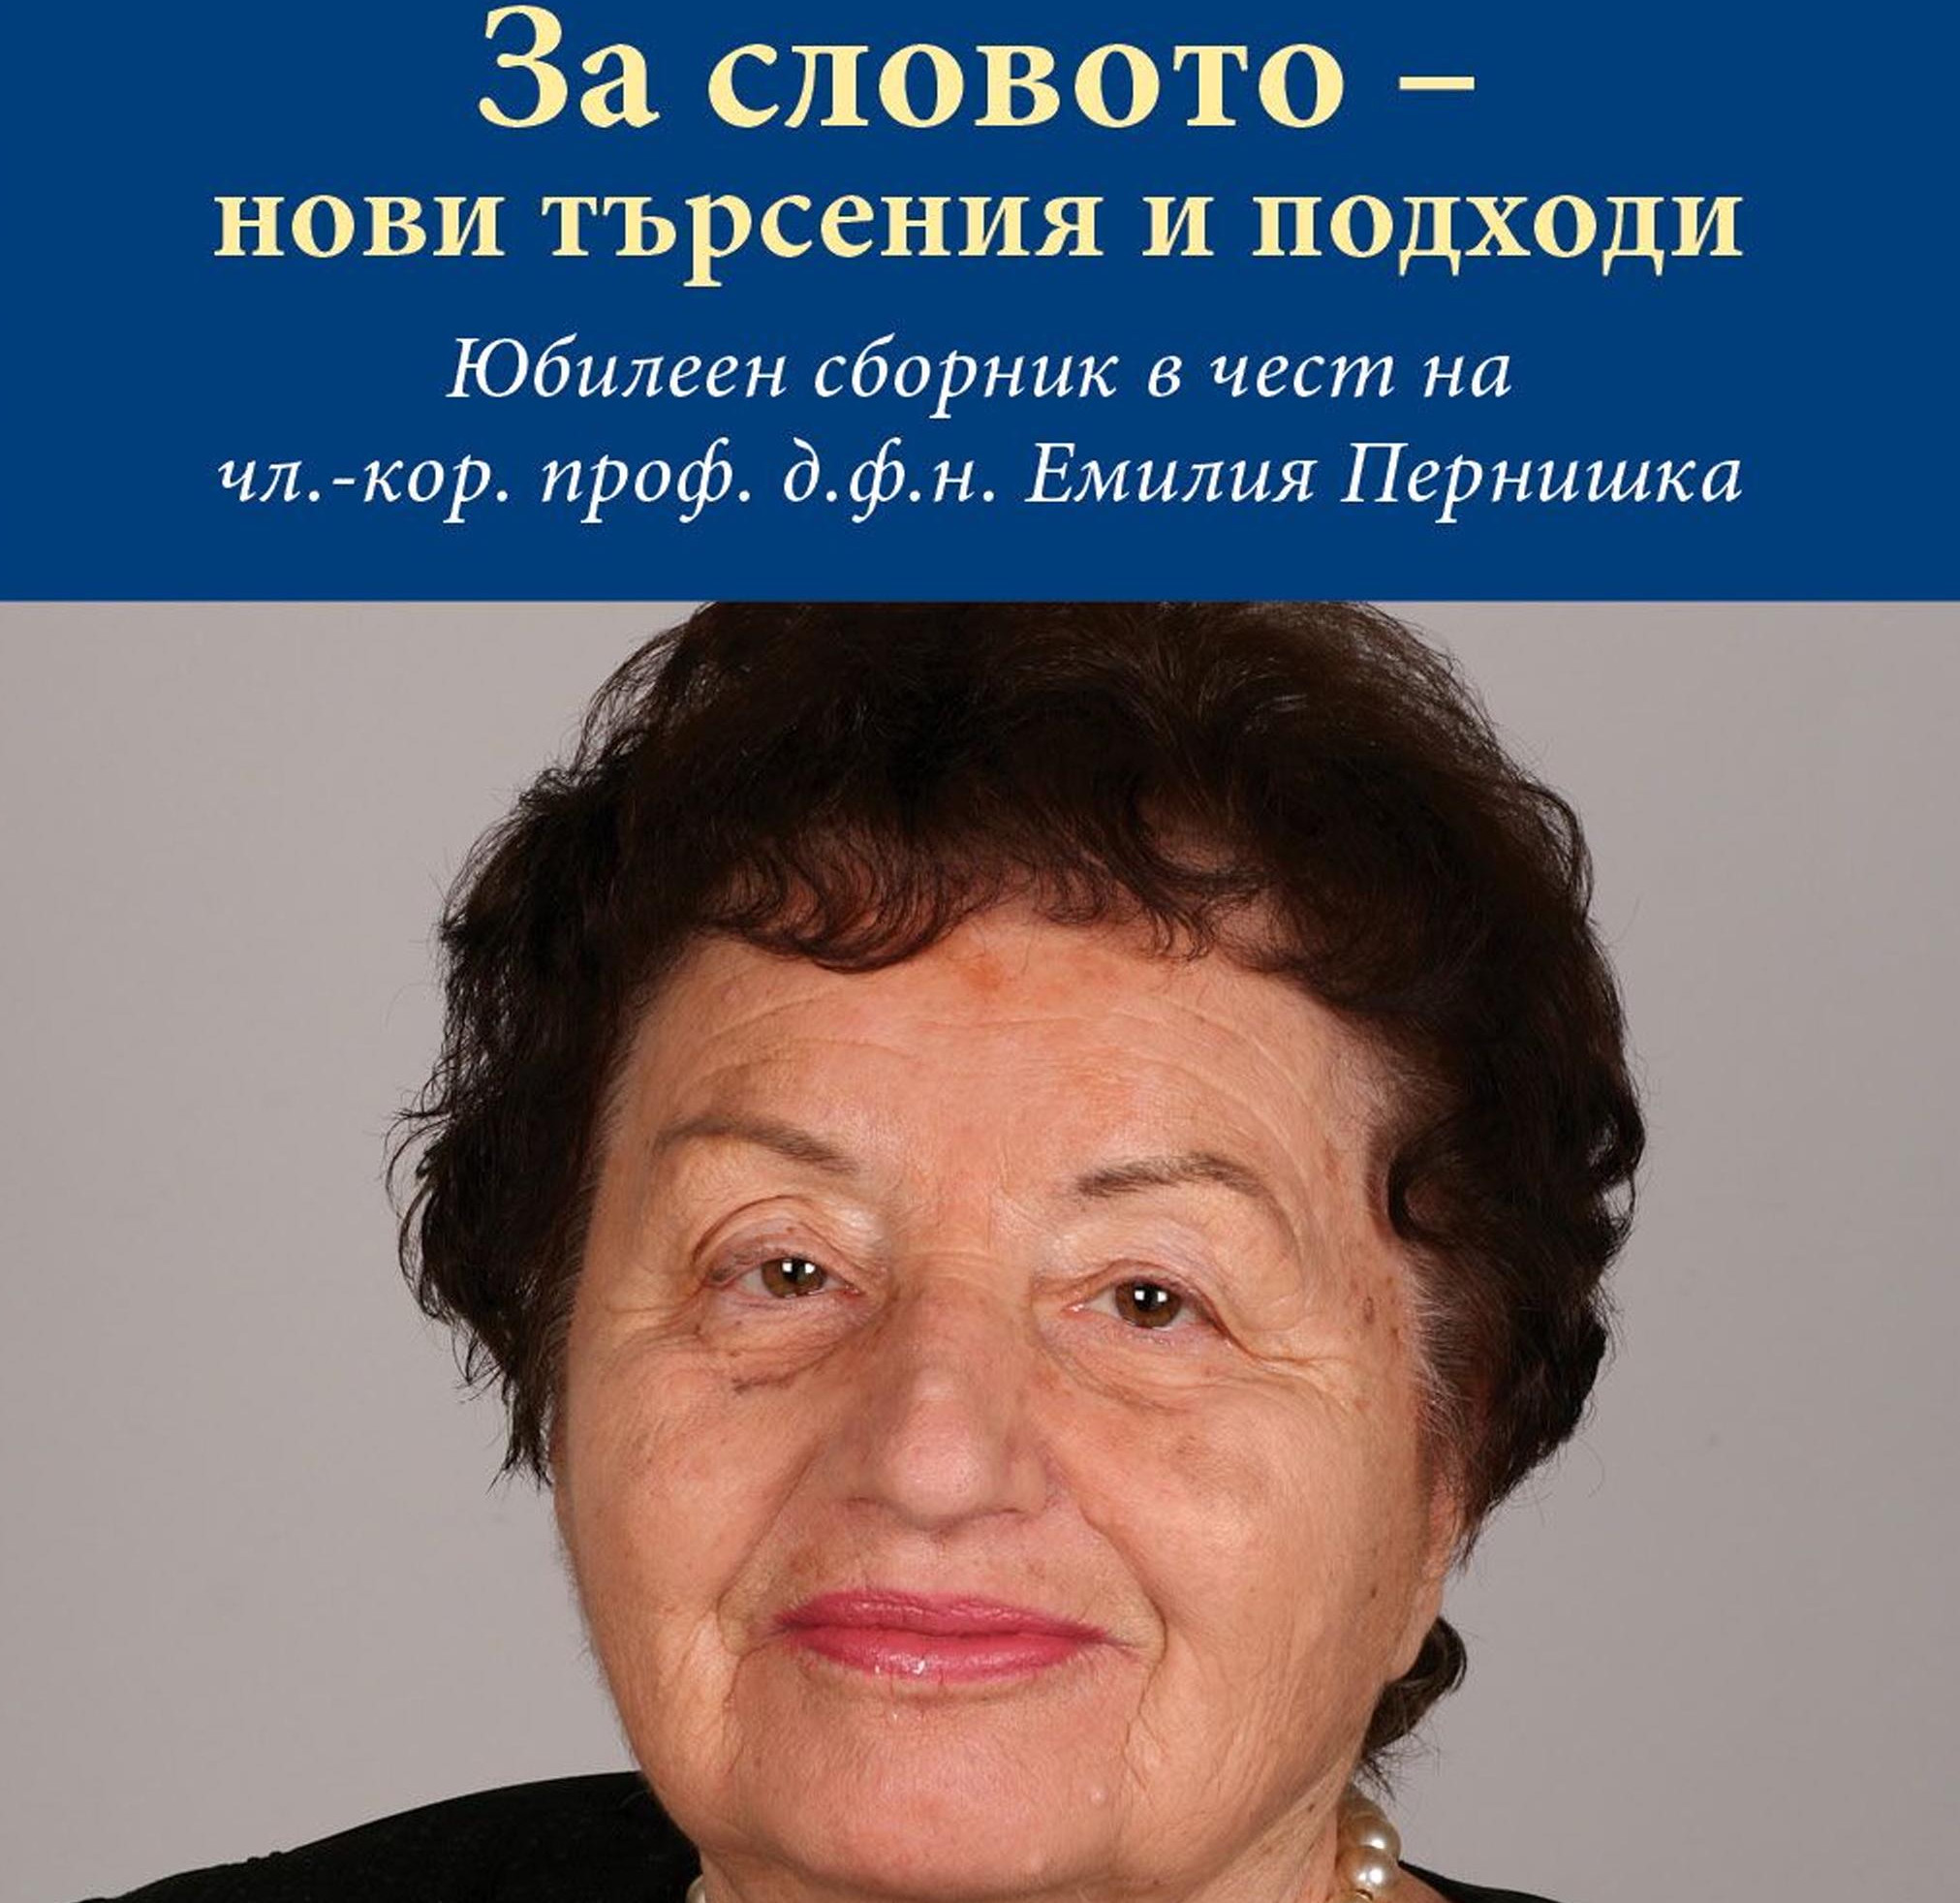 Юбилеен сборник за 80-годишнината на чл.-кор. проф. д.ф.н. Емилия Пернишка